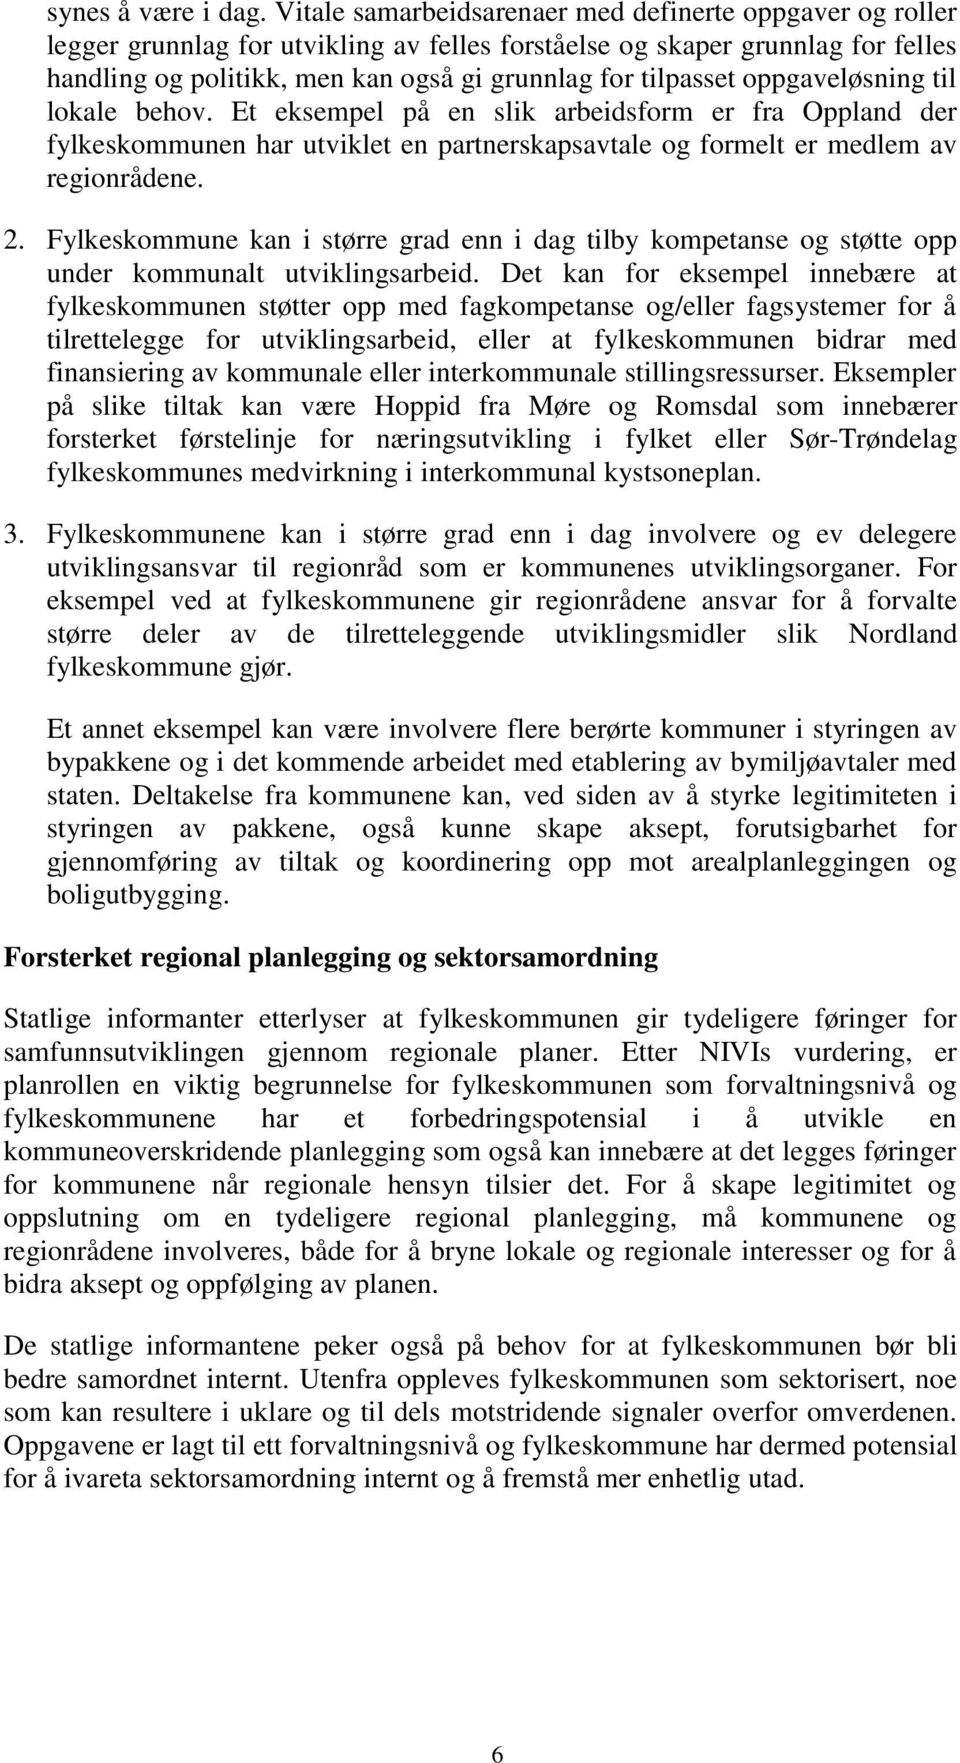 oppgaveløsning til lokale behov. Et eksempel på en slik arbeidsform er fra Oppland der fylkeskommunen har utviklet en partnerskapsavtale og formelt er medlem av regionrådene. 2.